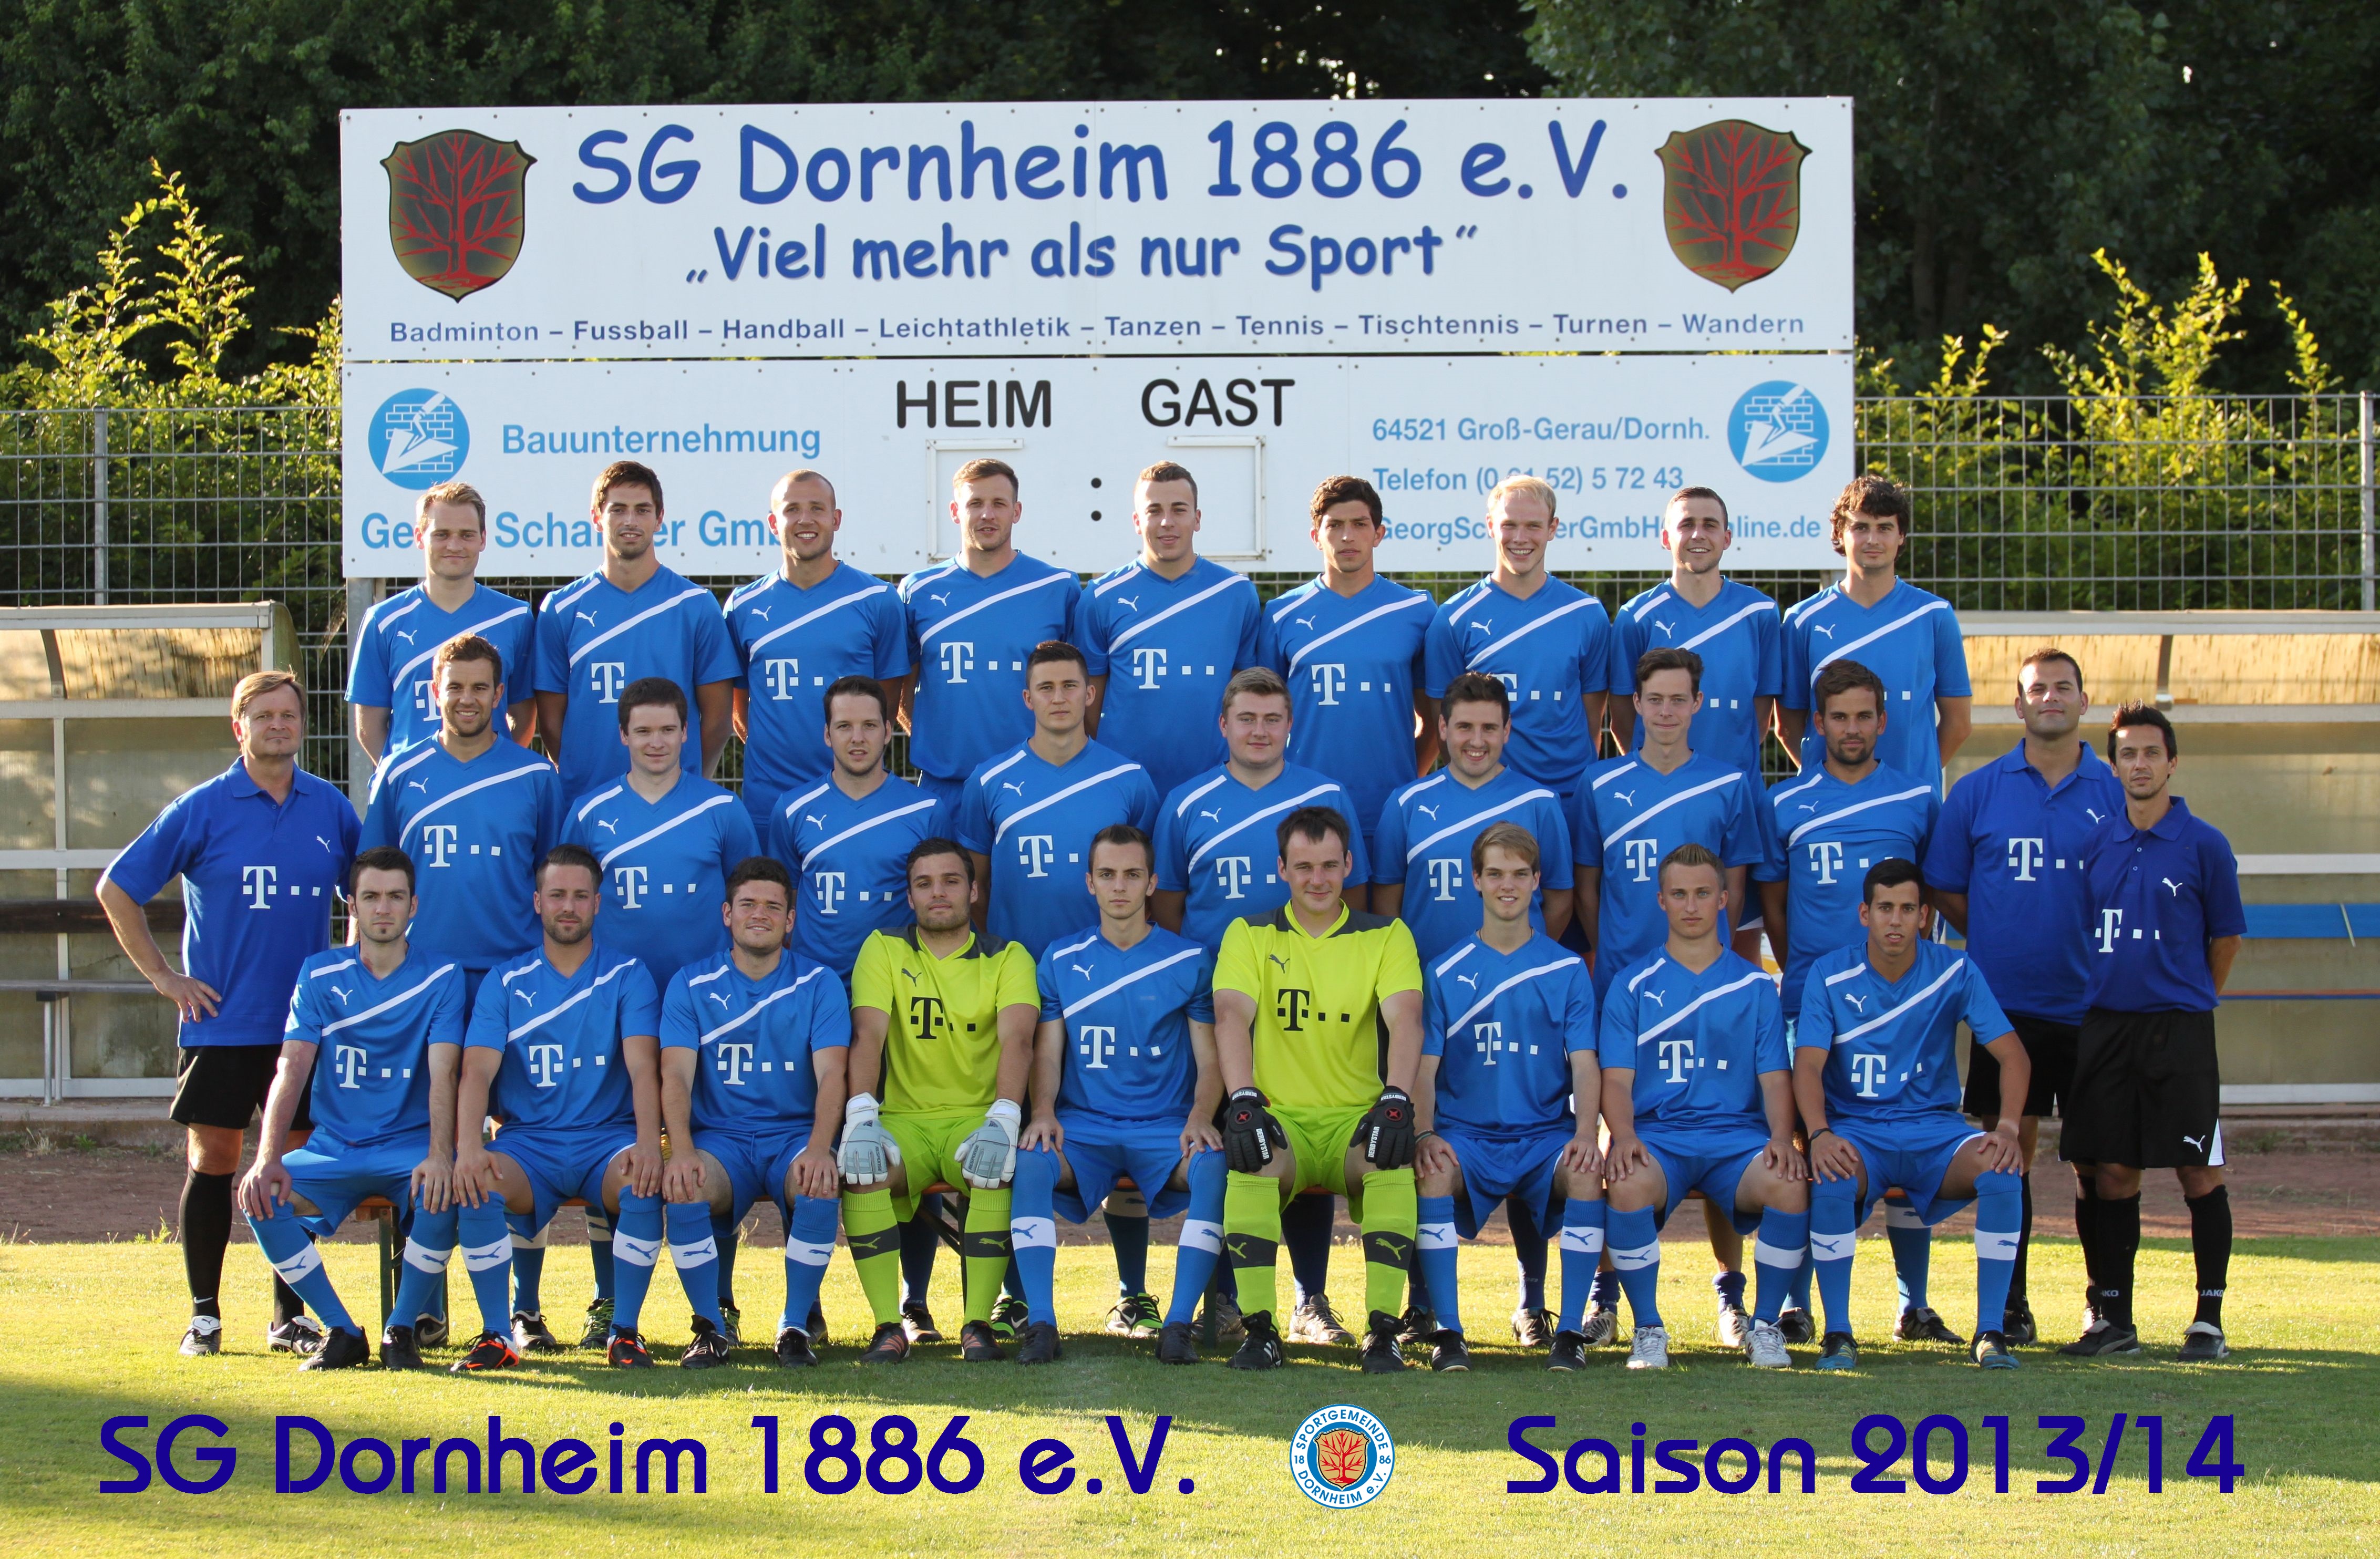 Mannschaftsfoto/Teamfoto von SG Dornheim